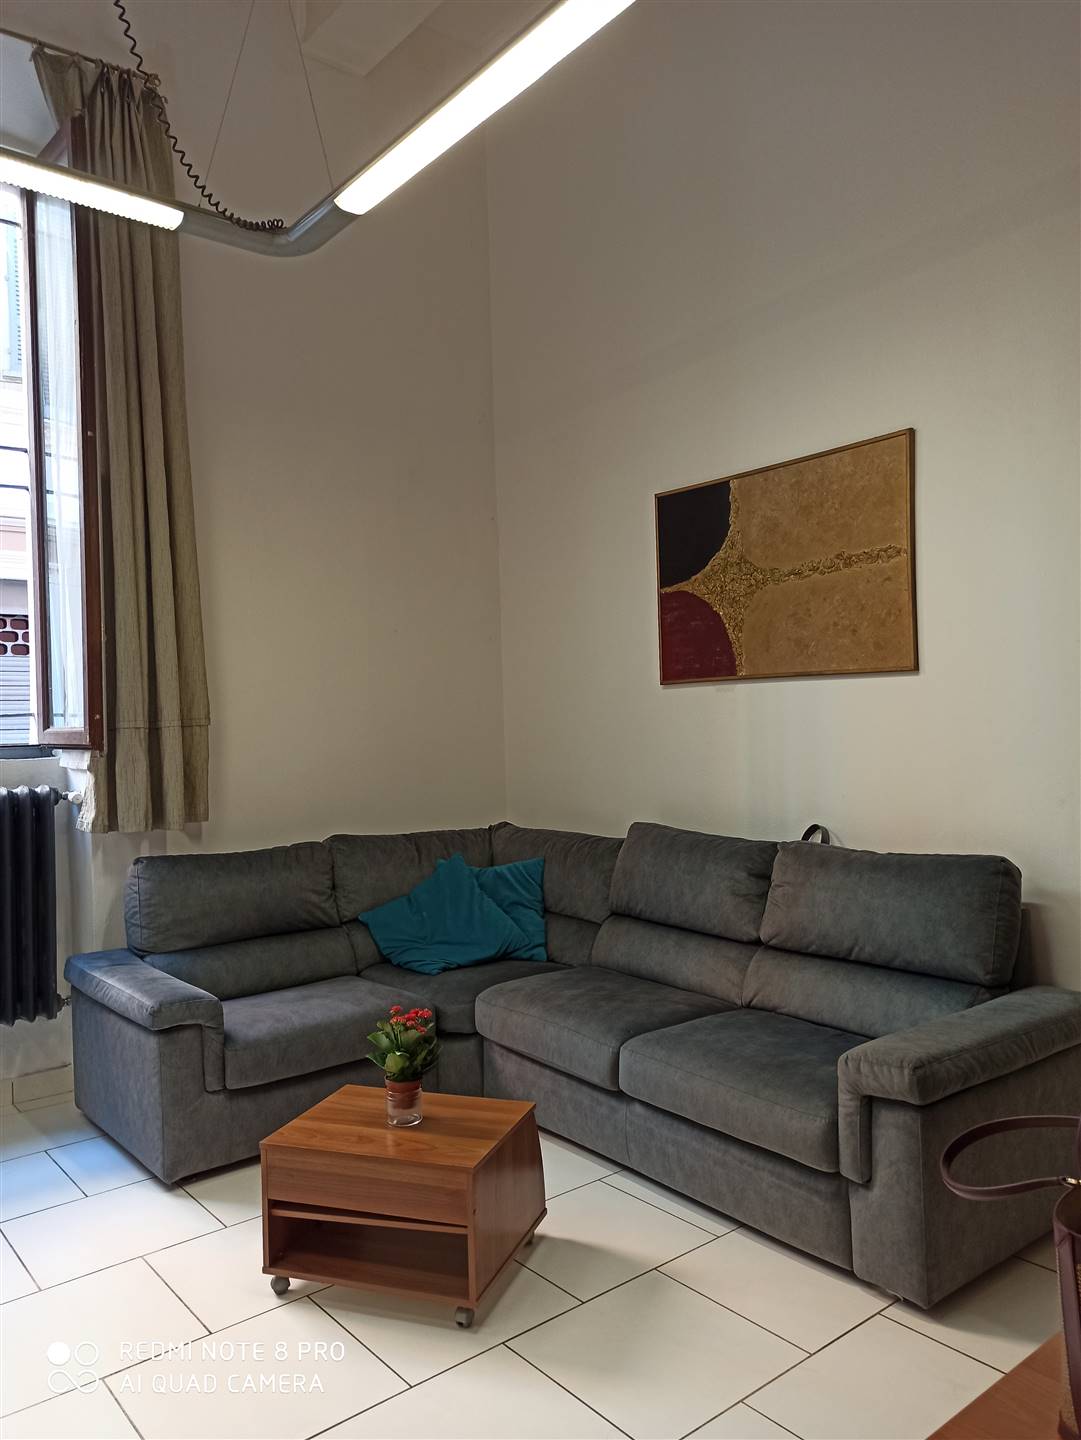 Appartamento in affitto a Novara, 2 locali, zona Località: CENTRO STORICO, prezzo € 500 | CambioCasa.it